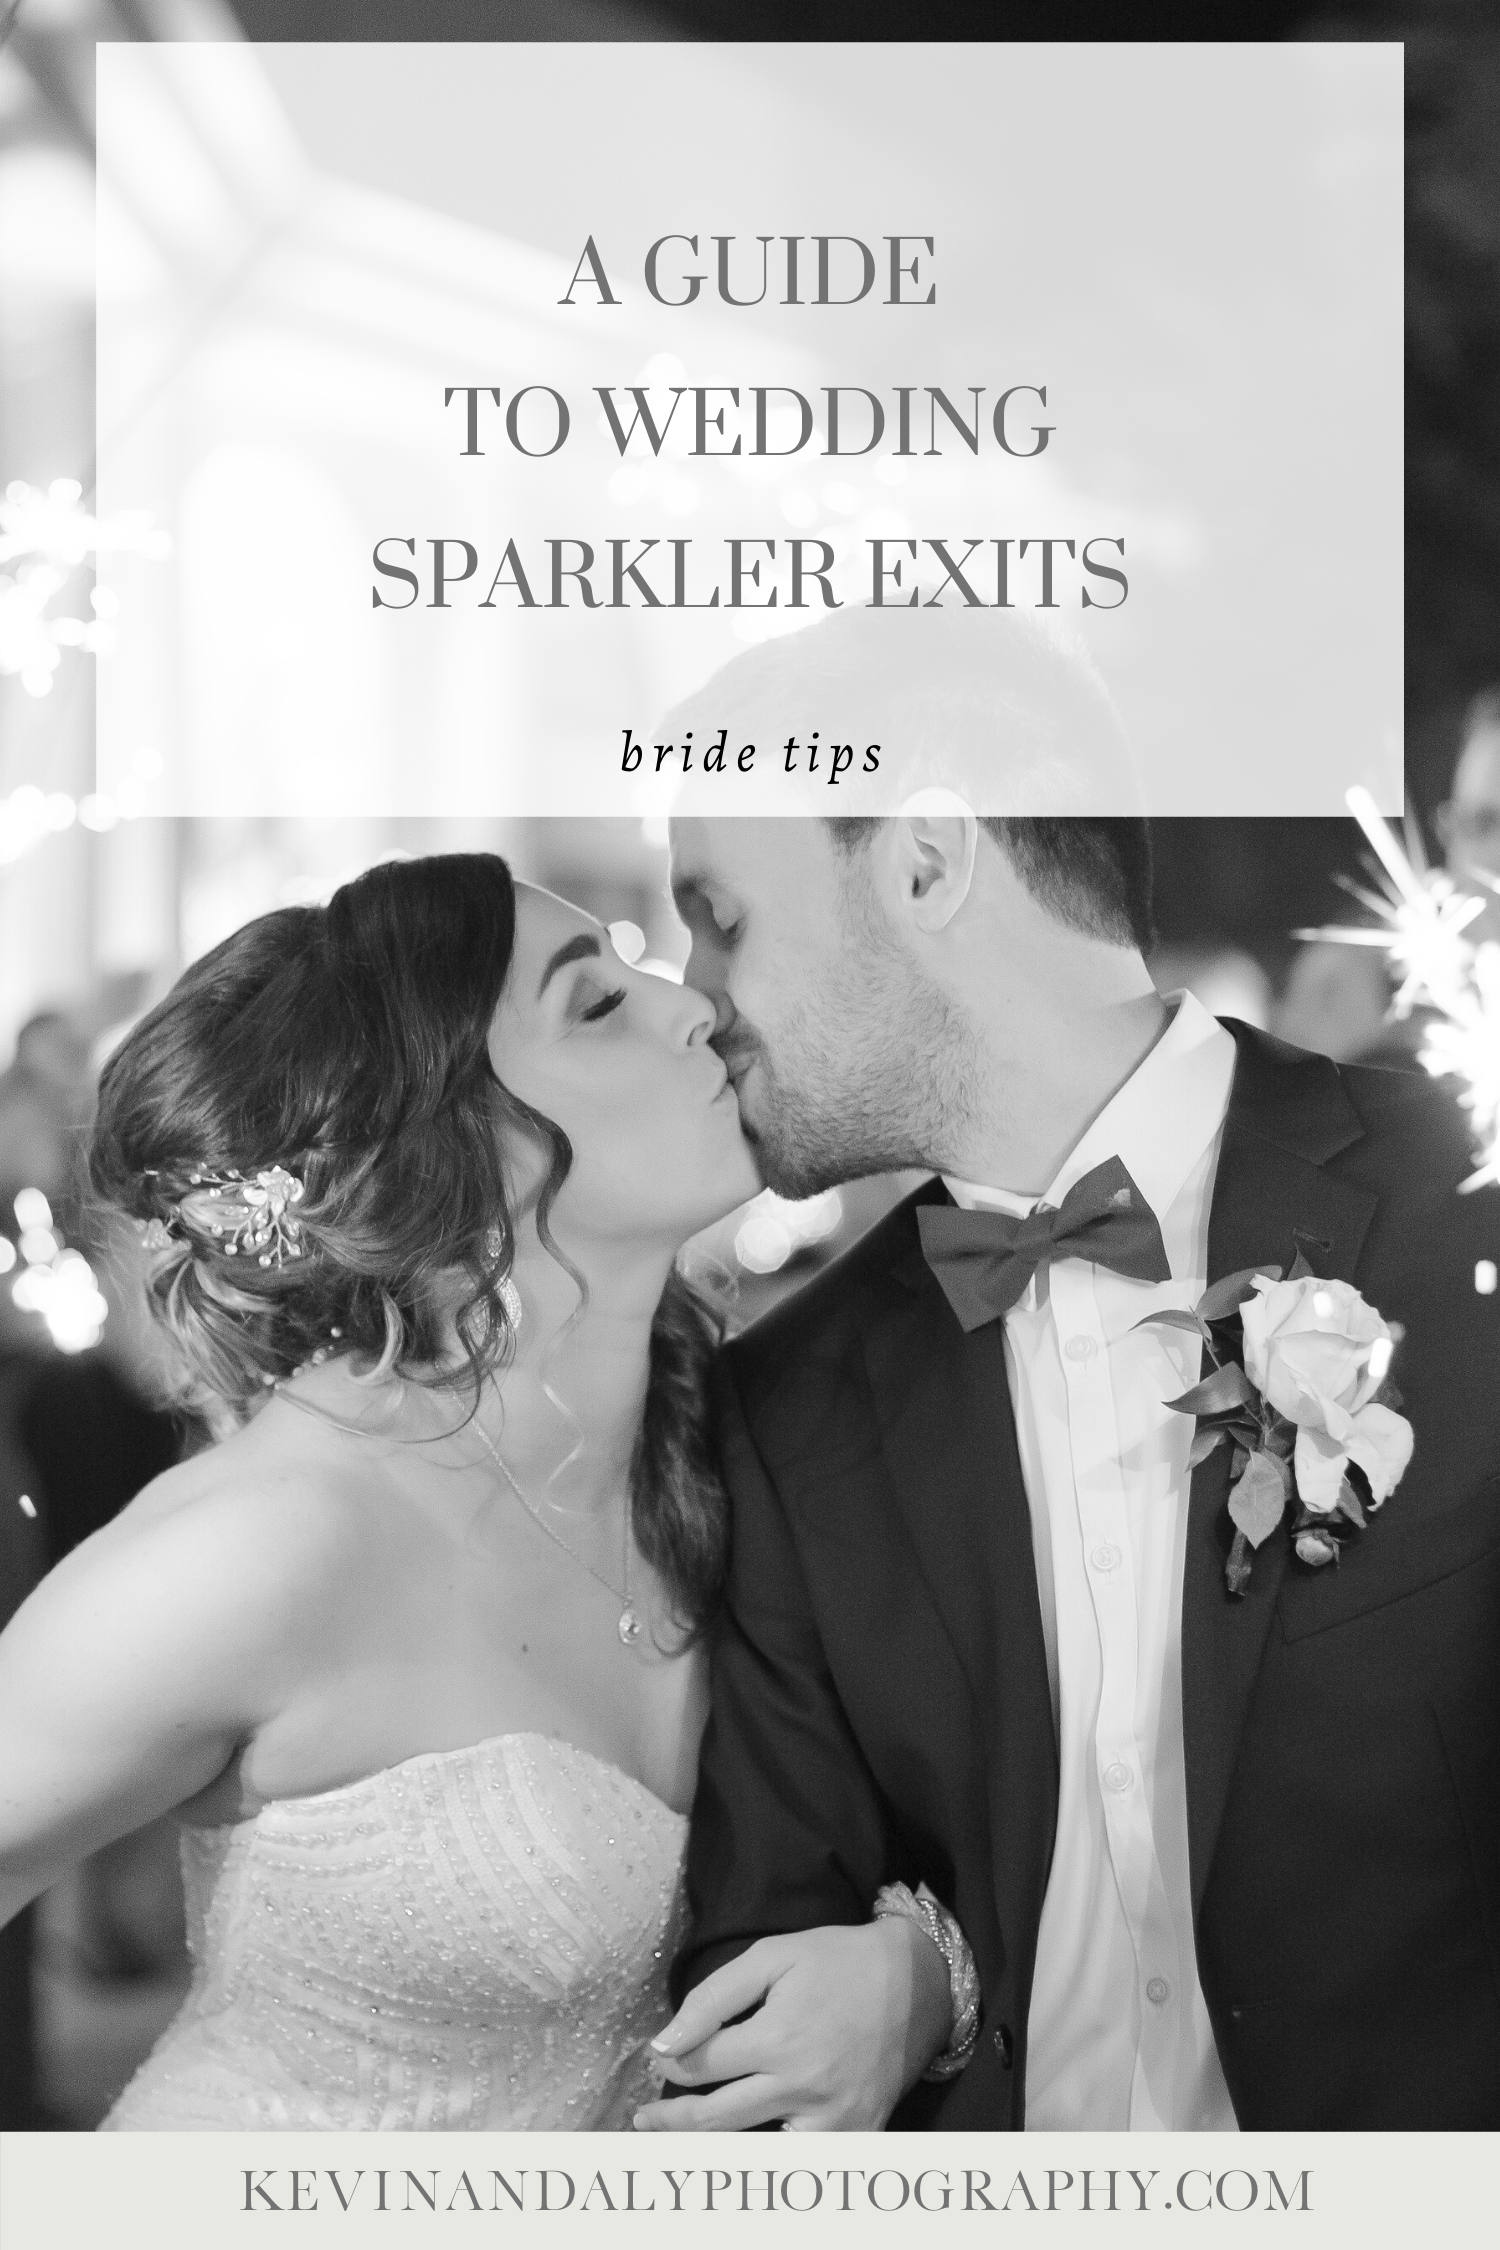 blog post for brides on wedding sparkler exits